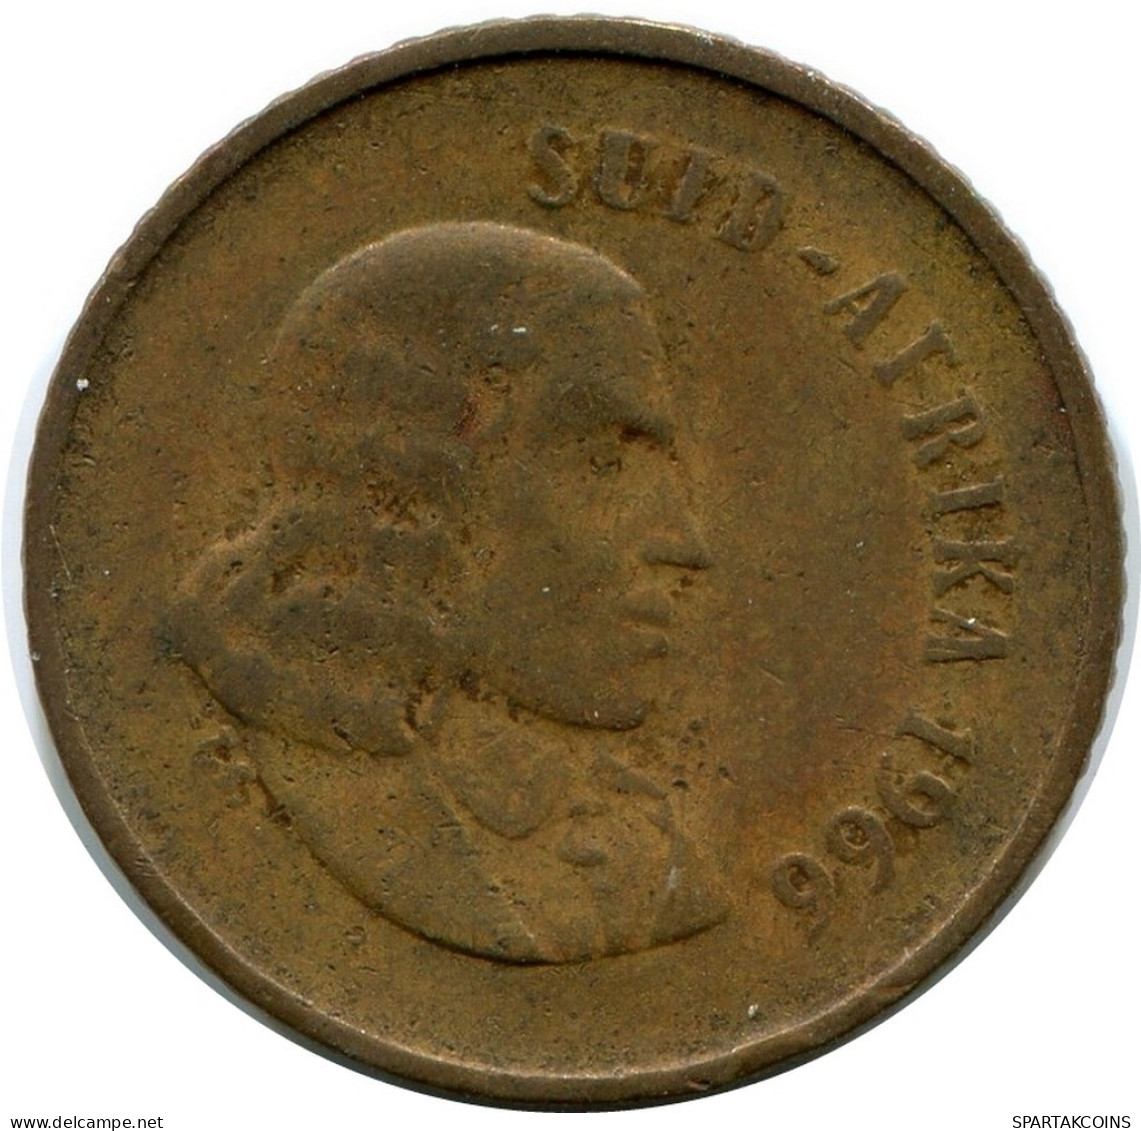 1 CENT 1966 SOUTH AFRICA Coin #AX167.U.A - Sudáfrica